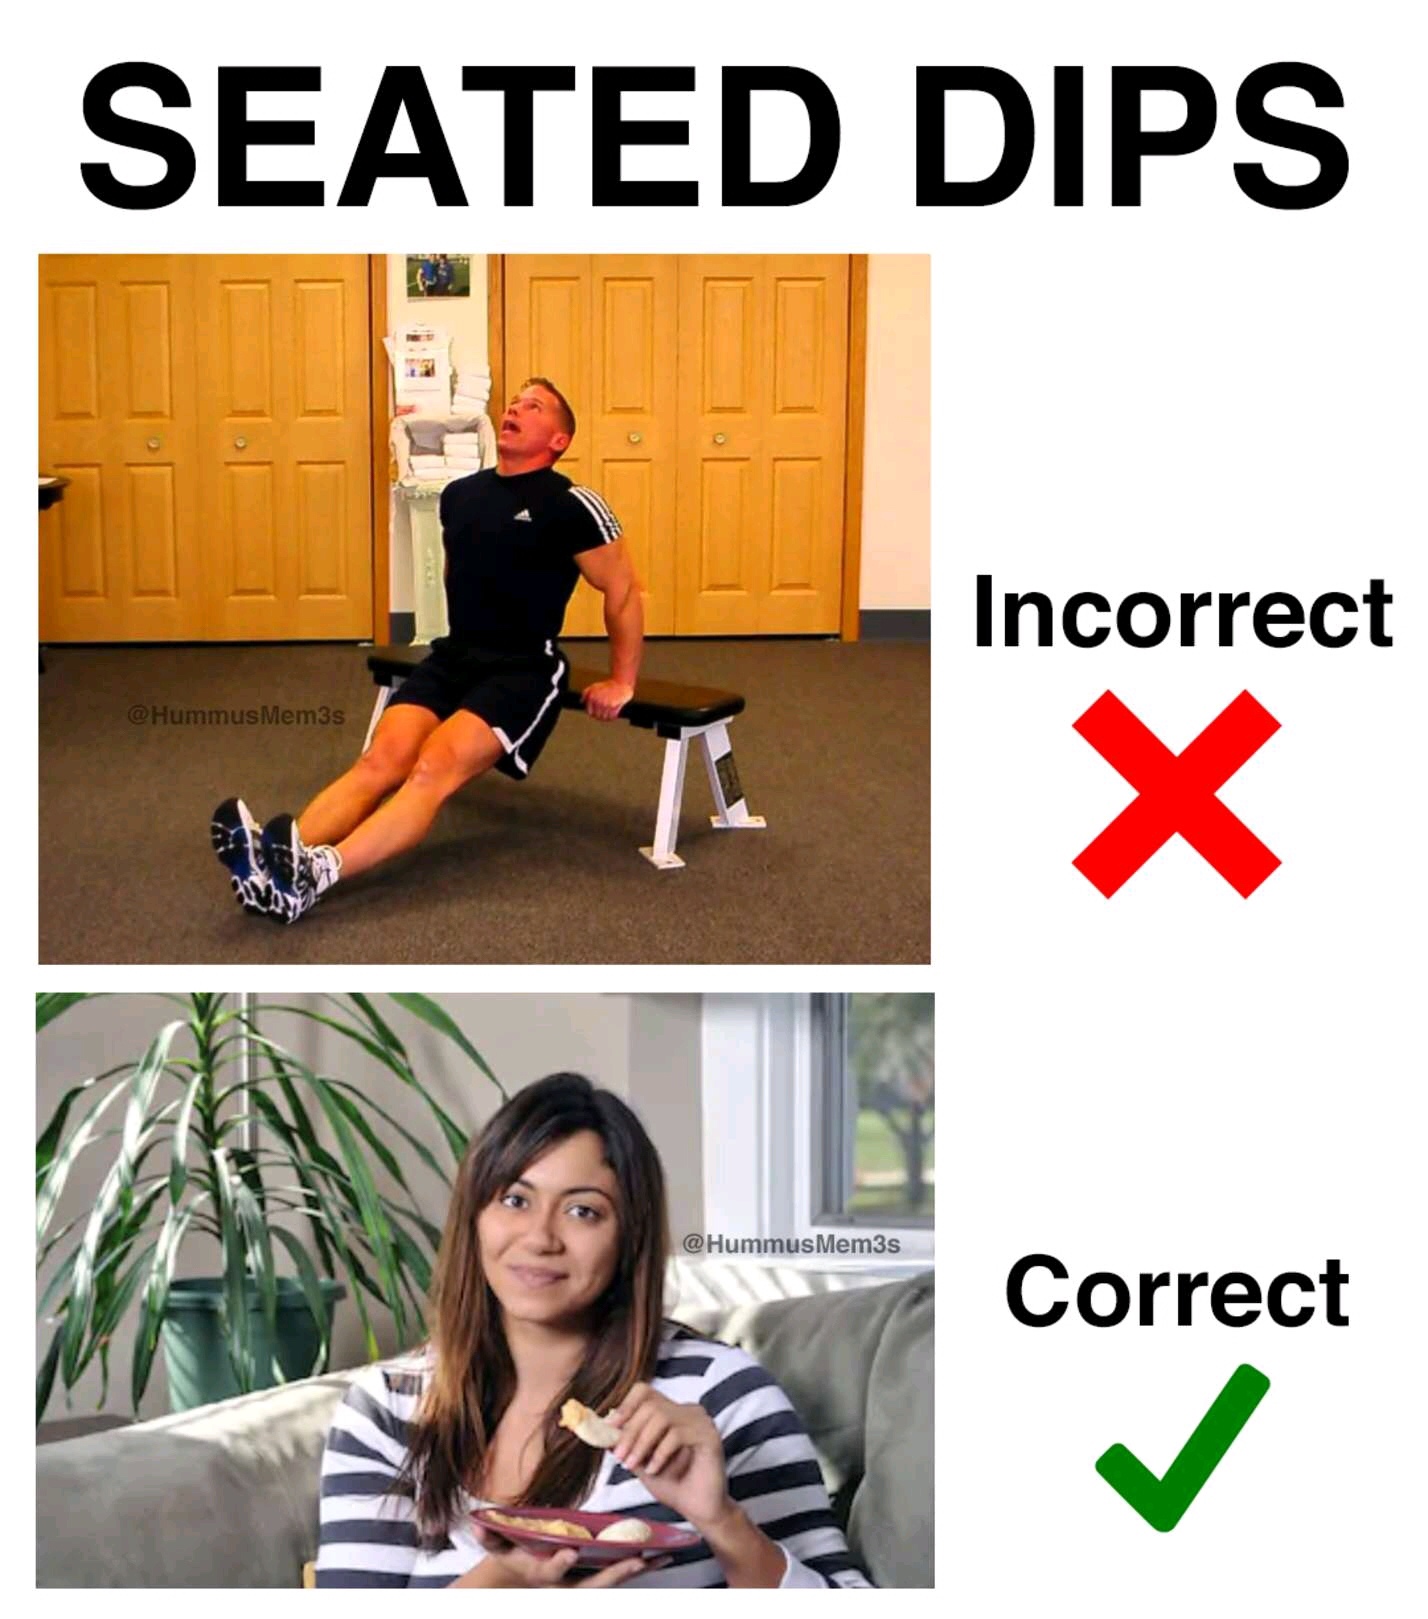 triceps memes - Seated Dips Incorrect Hummus Mem3s Mem3s Correct